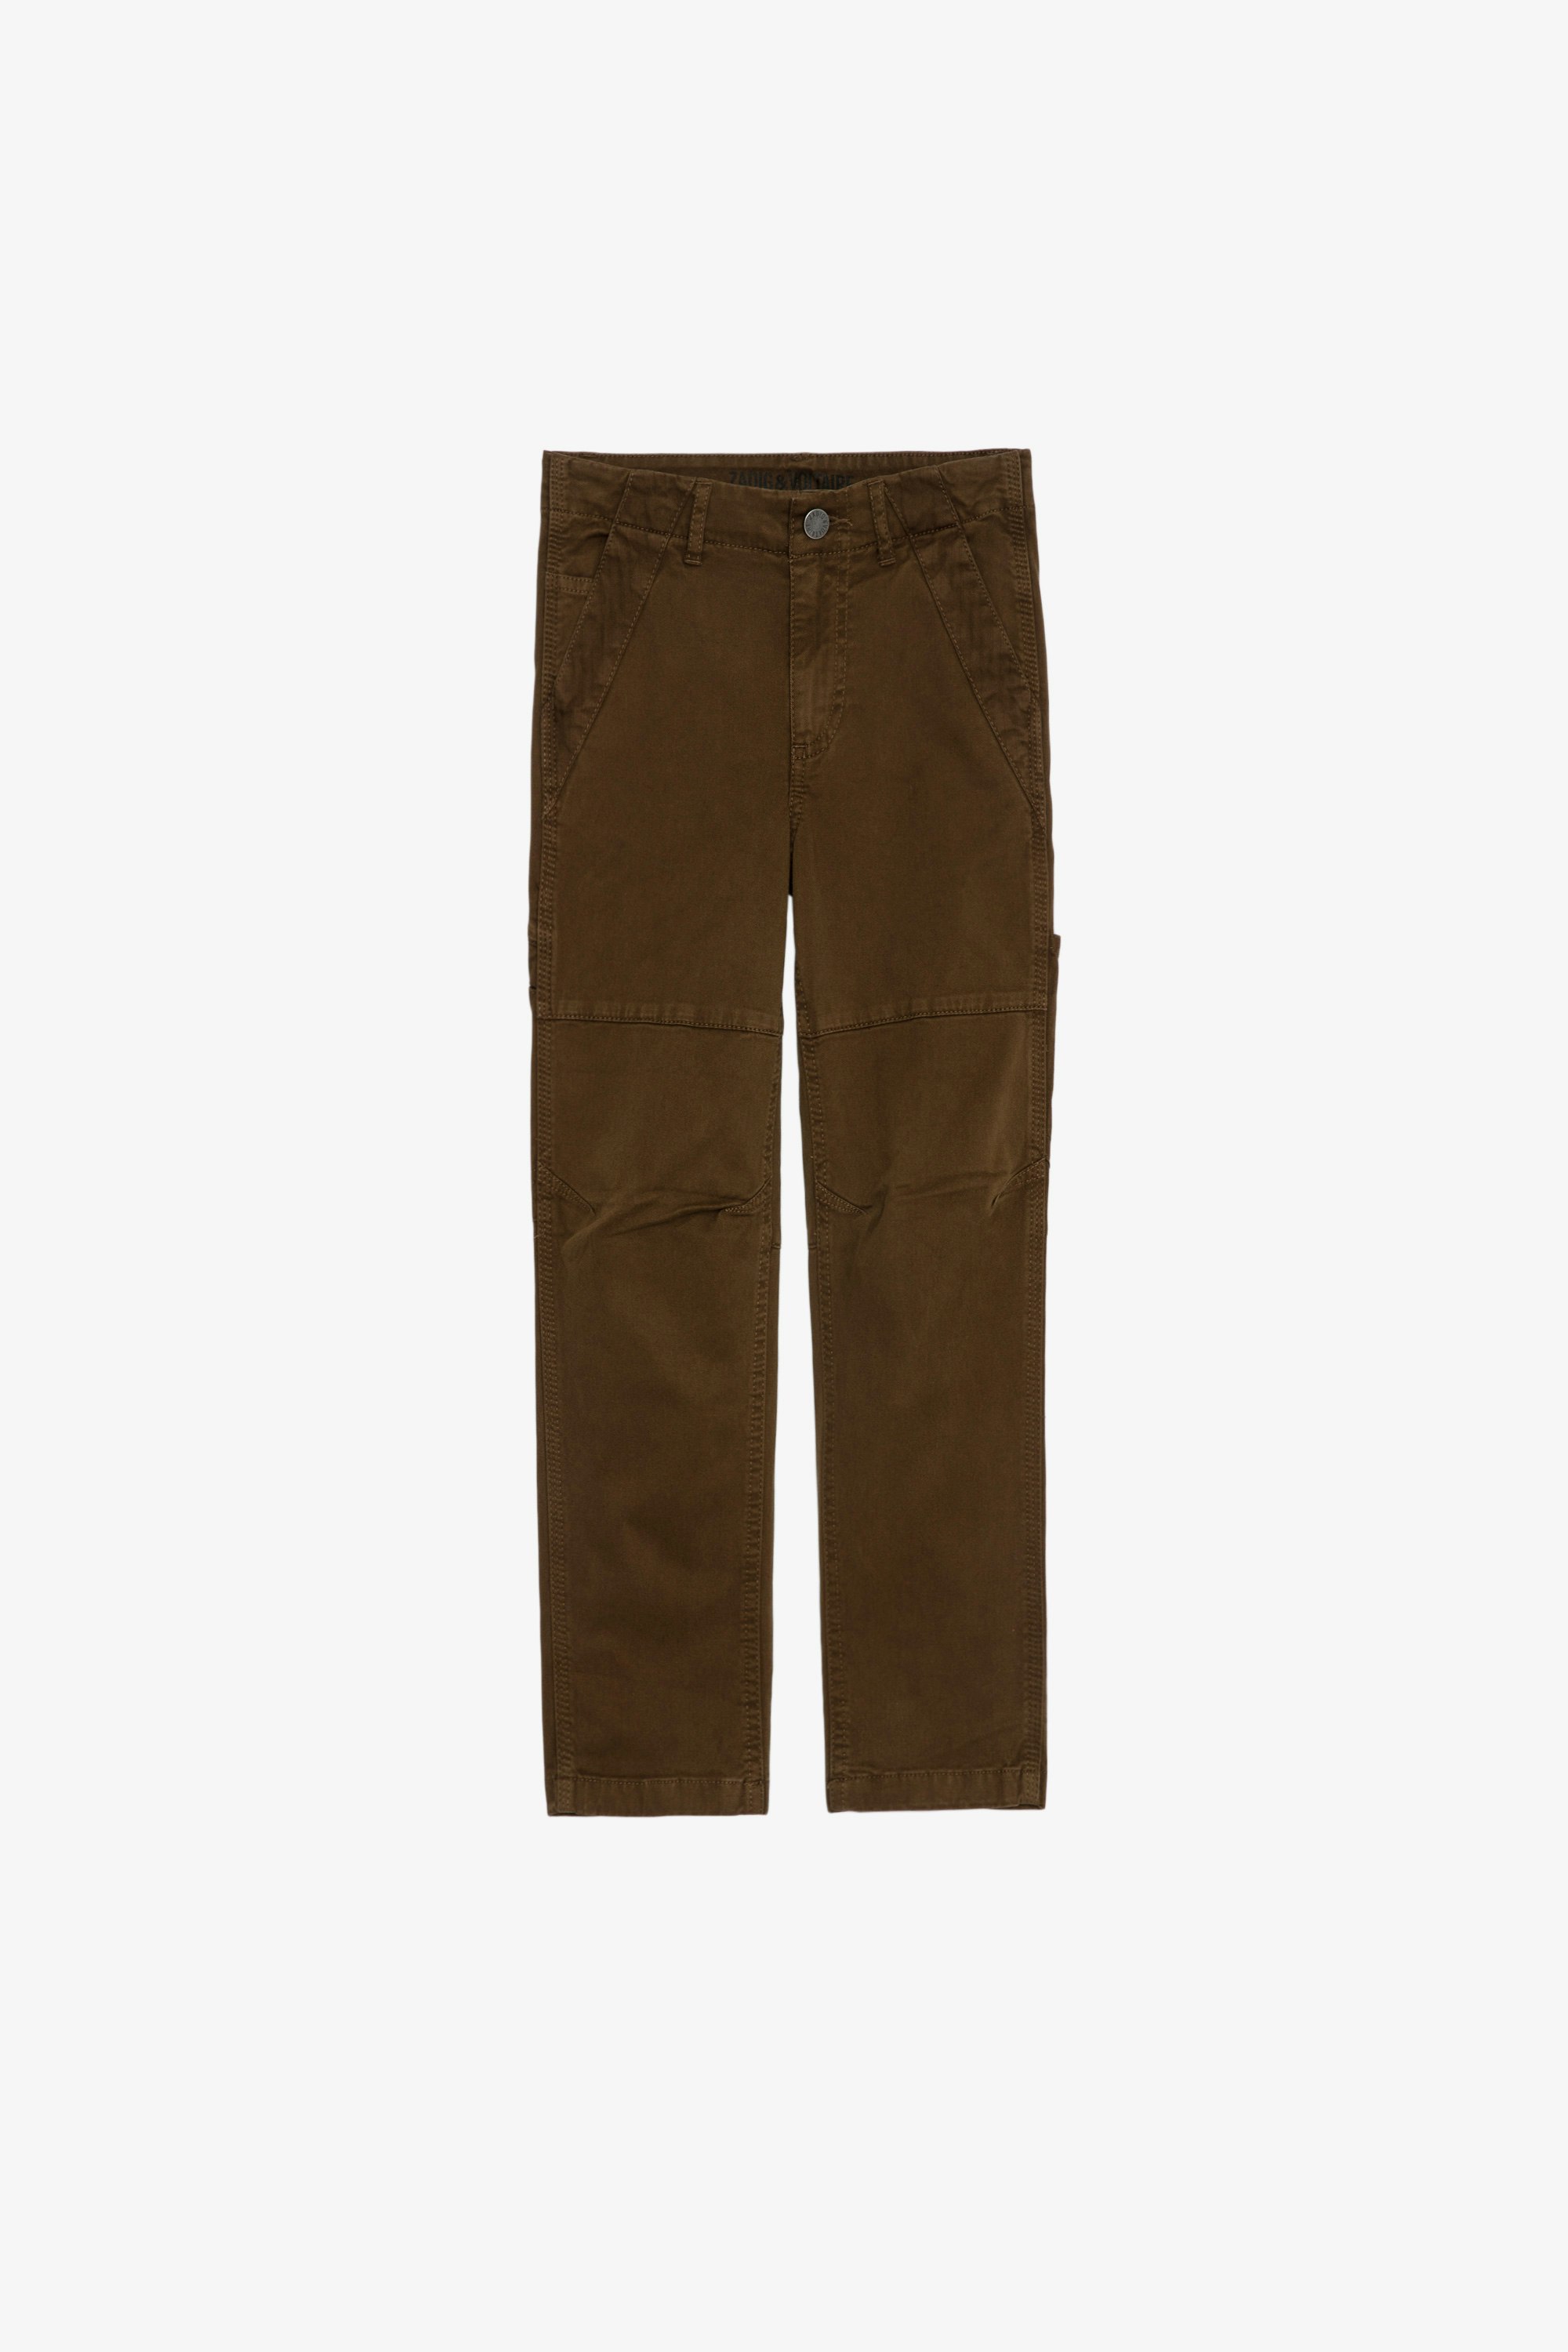 Theo Children’s パンツ Children’s khaki cotton trousers 